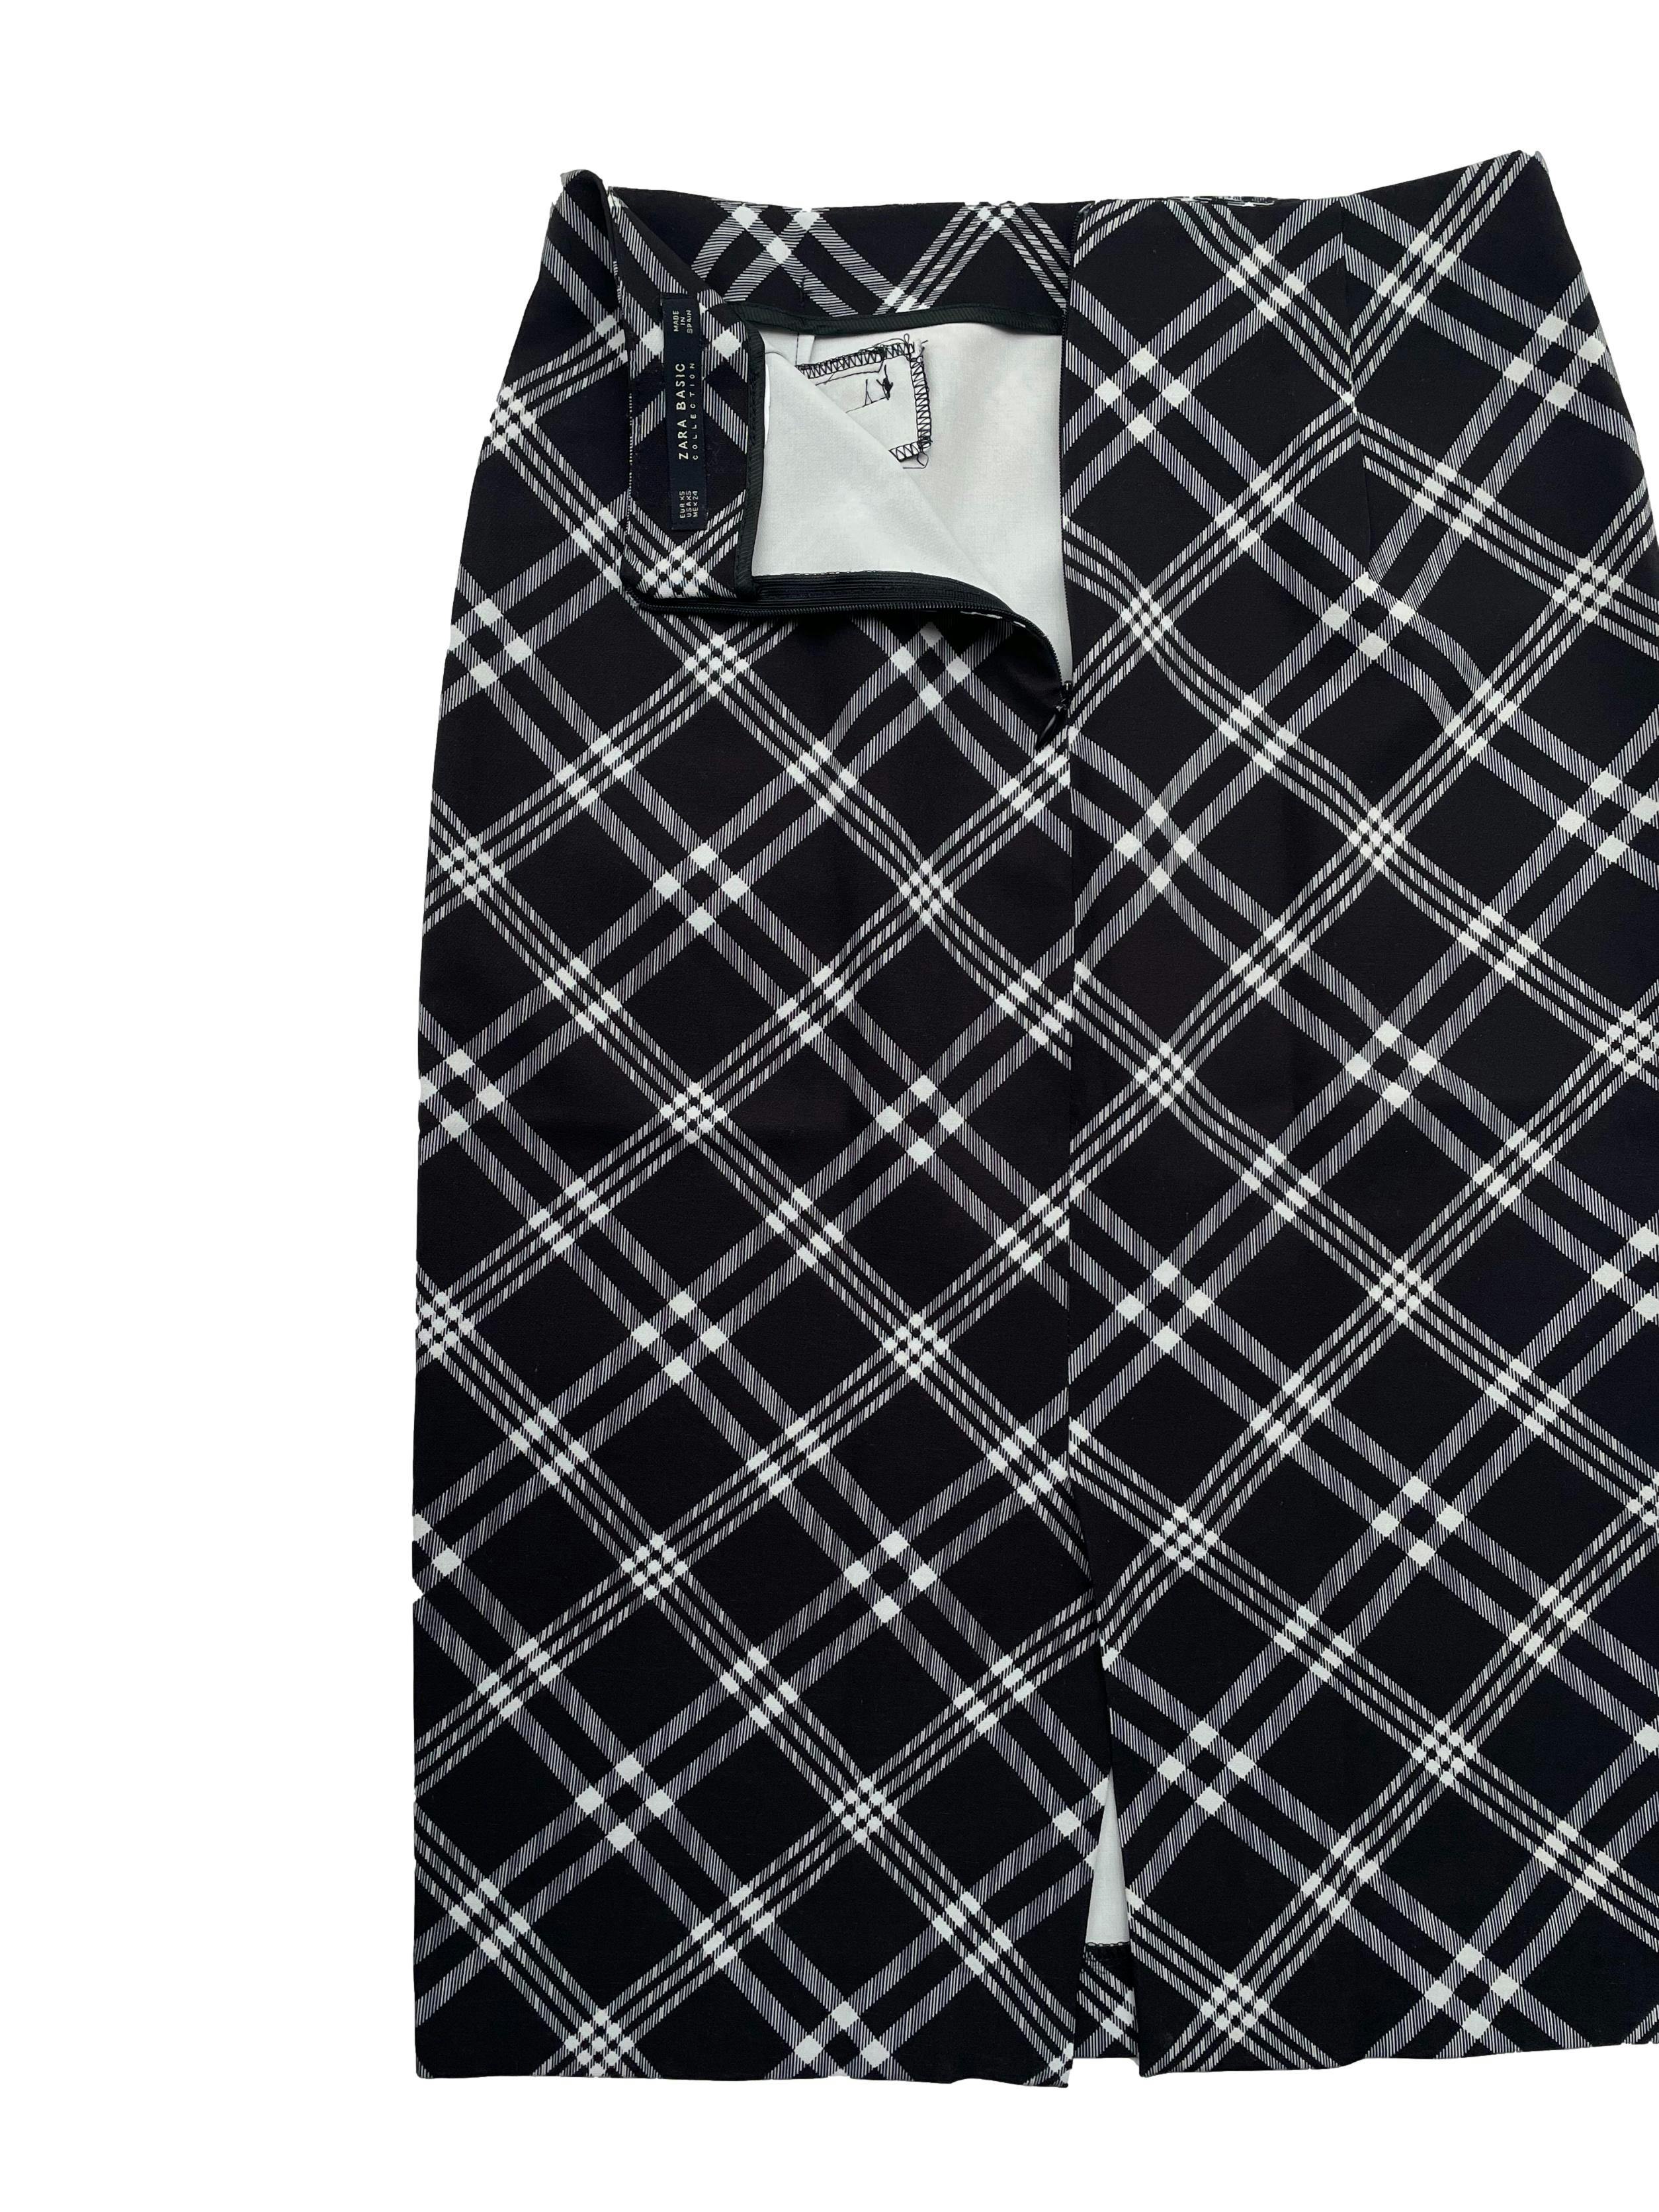 Falda lapiz Zara a cuadros en blanco y negro, tela rígida, falsos bolsillos,pinzas; cierre invisible y abertura posterior. Cintura 64cm, Largo 60cm.